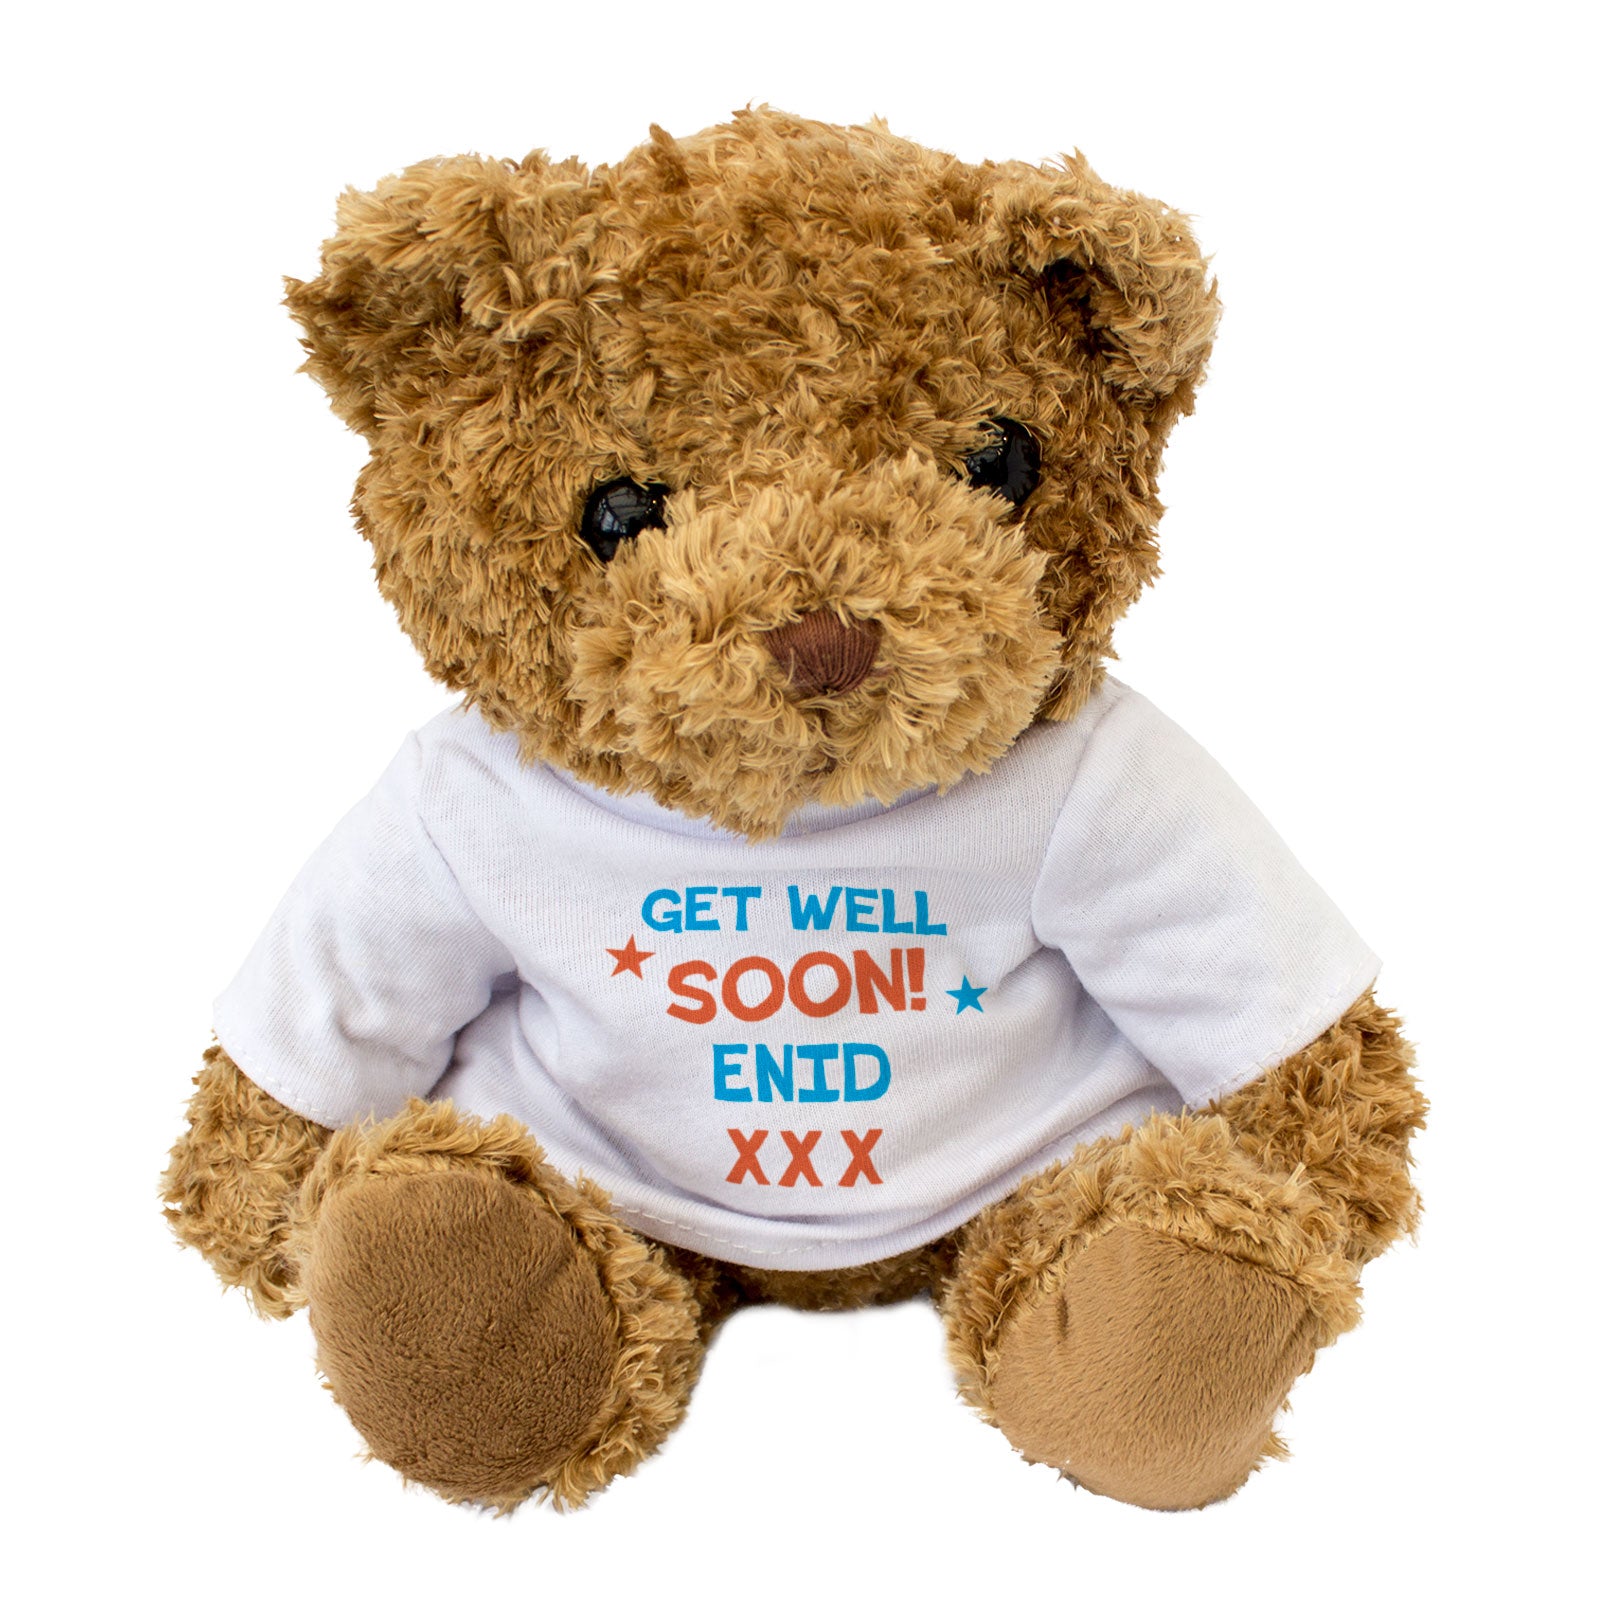 Get Well Soon Enid - Teddy Bear